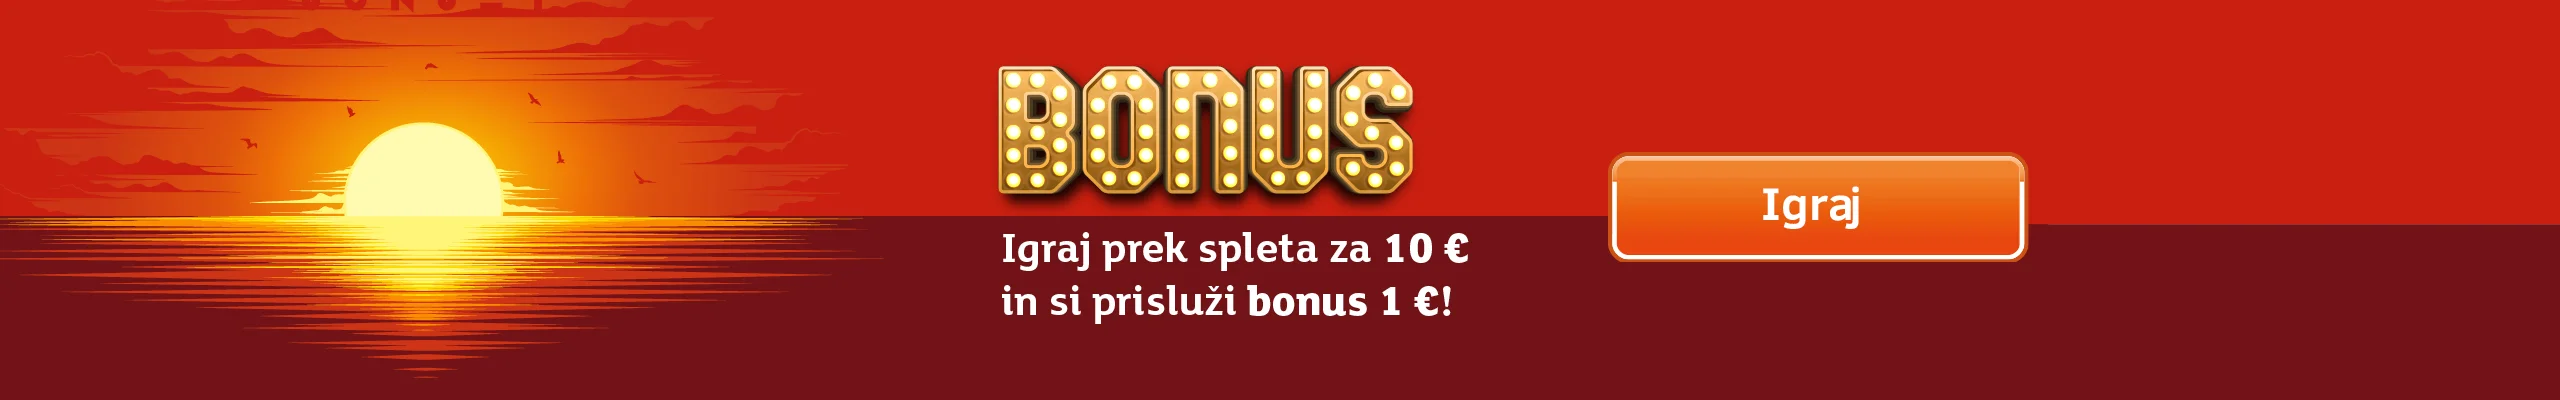 Sončni bonus. Igraj prek spleta za 10 € in si prisluži bonus 1 € ! Igraj